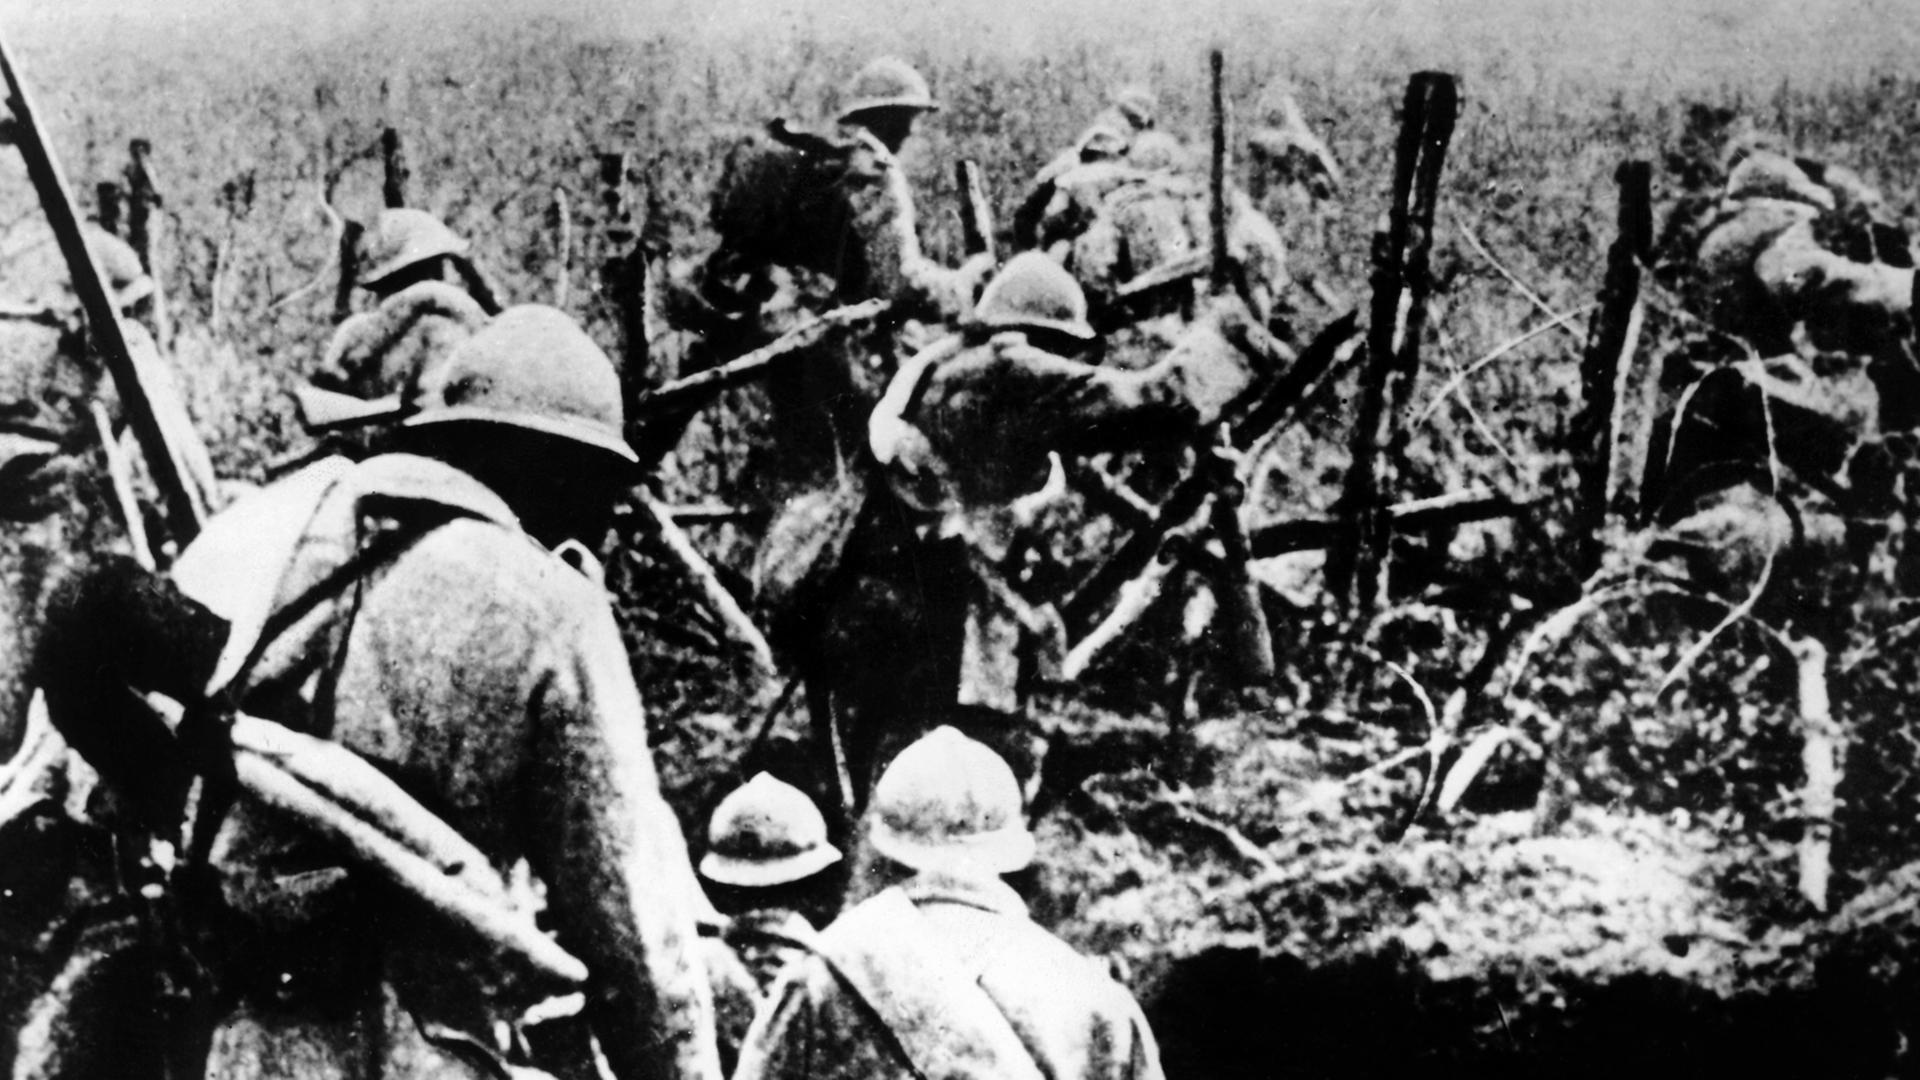 Französische Infanterie auf dem Schlachtfeld von Verdun im Ersten Weltkrieg (1914-1918).